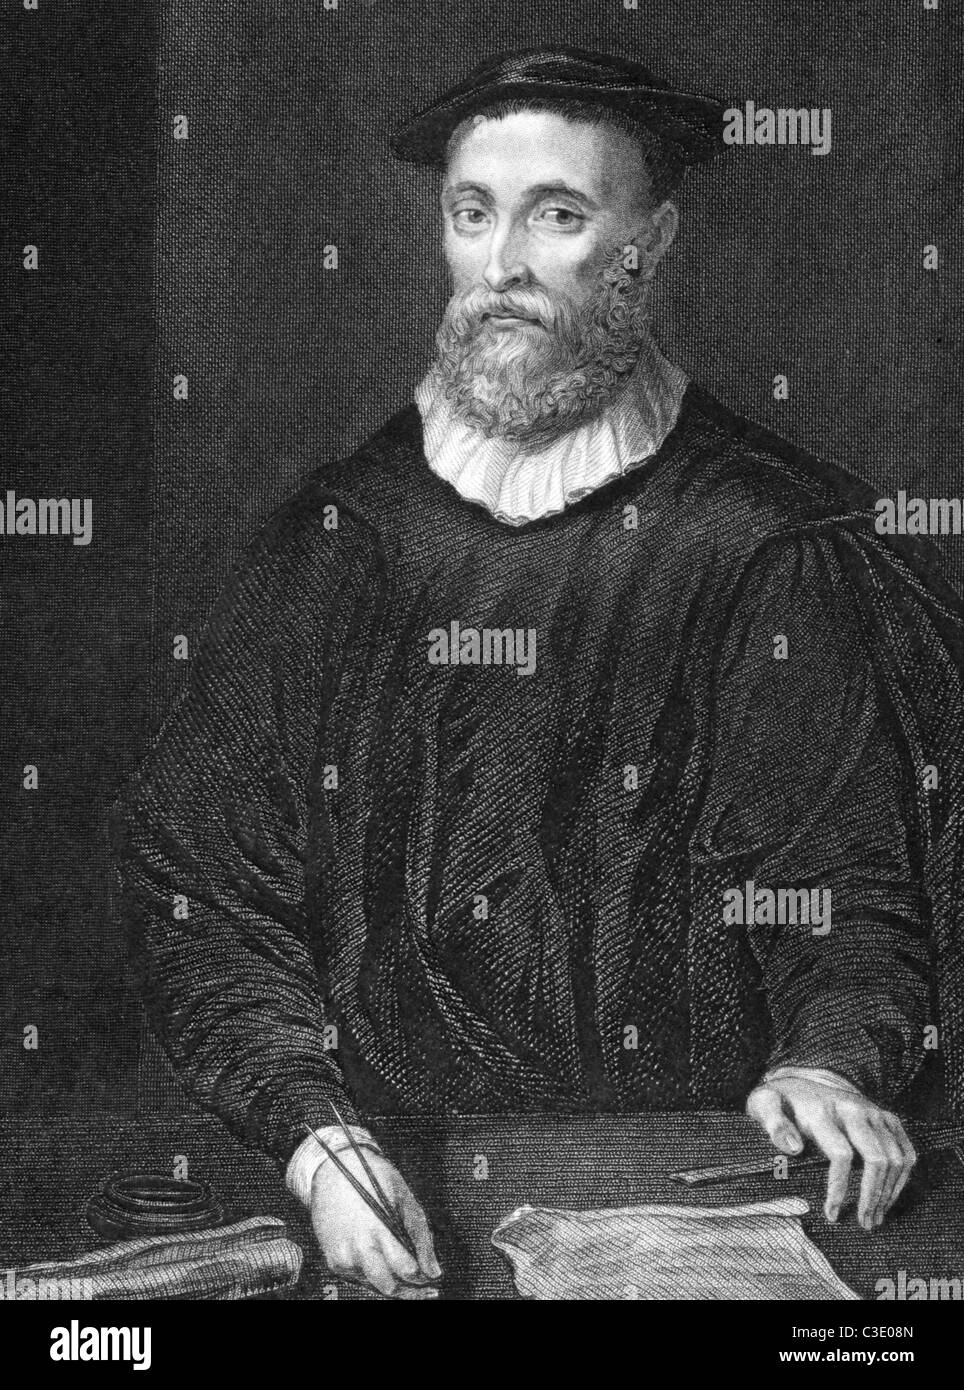 John Knox (1510-1572) sobre el grabado desde 1838. Clérigo escocés. Grabado por H.T.Ryall y publicado por J.Tallis & Co. Foto de stock